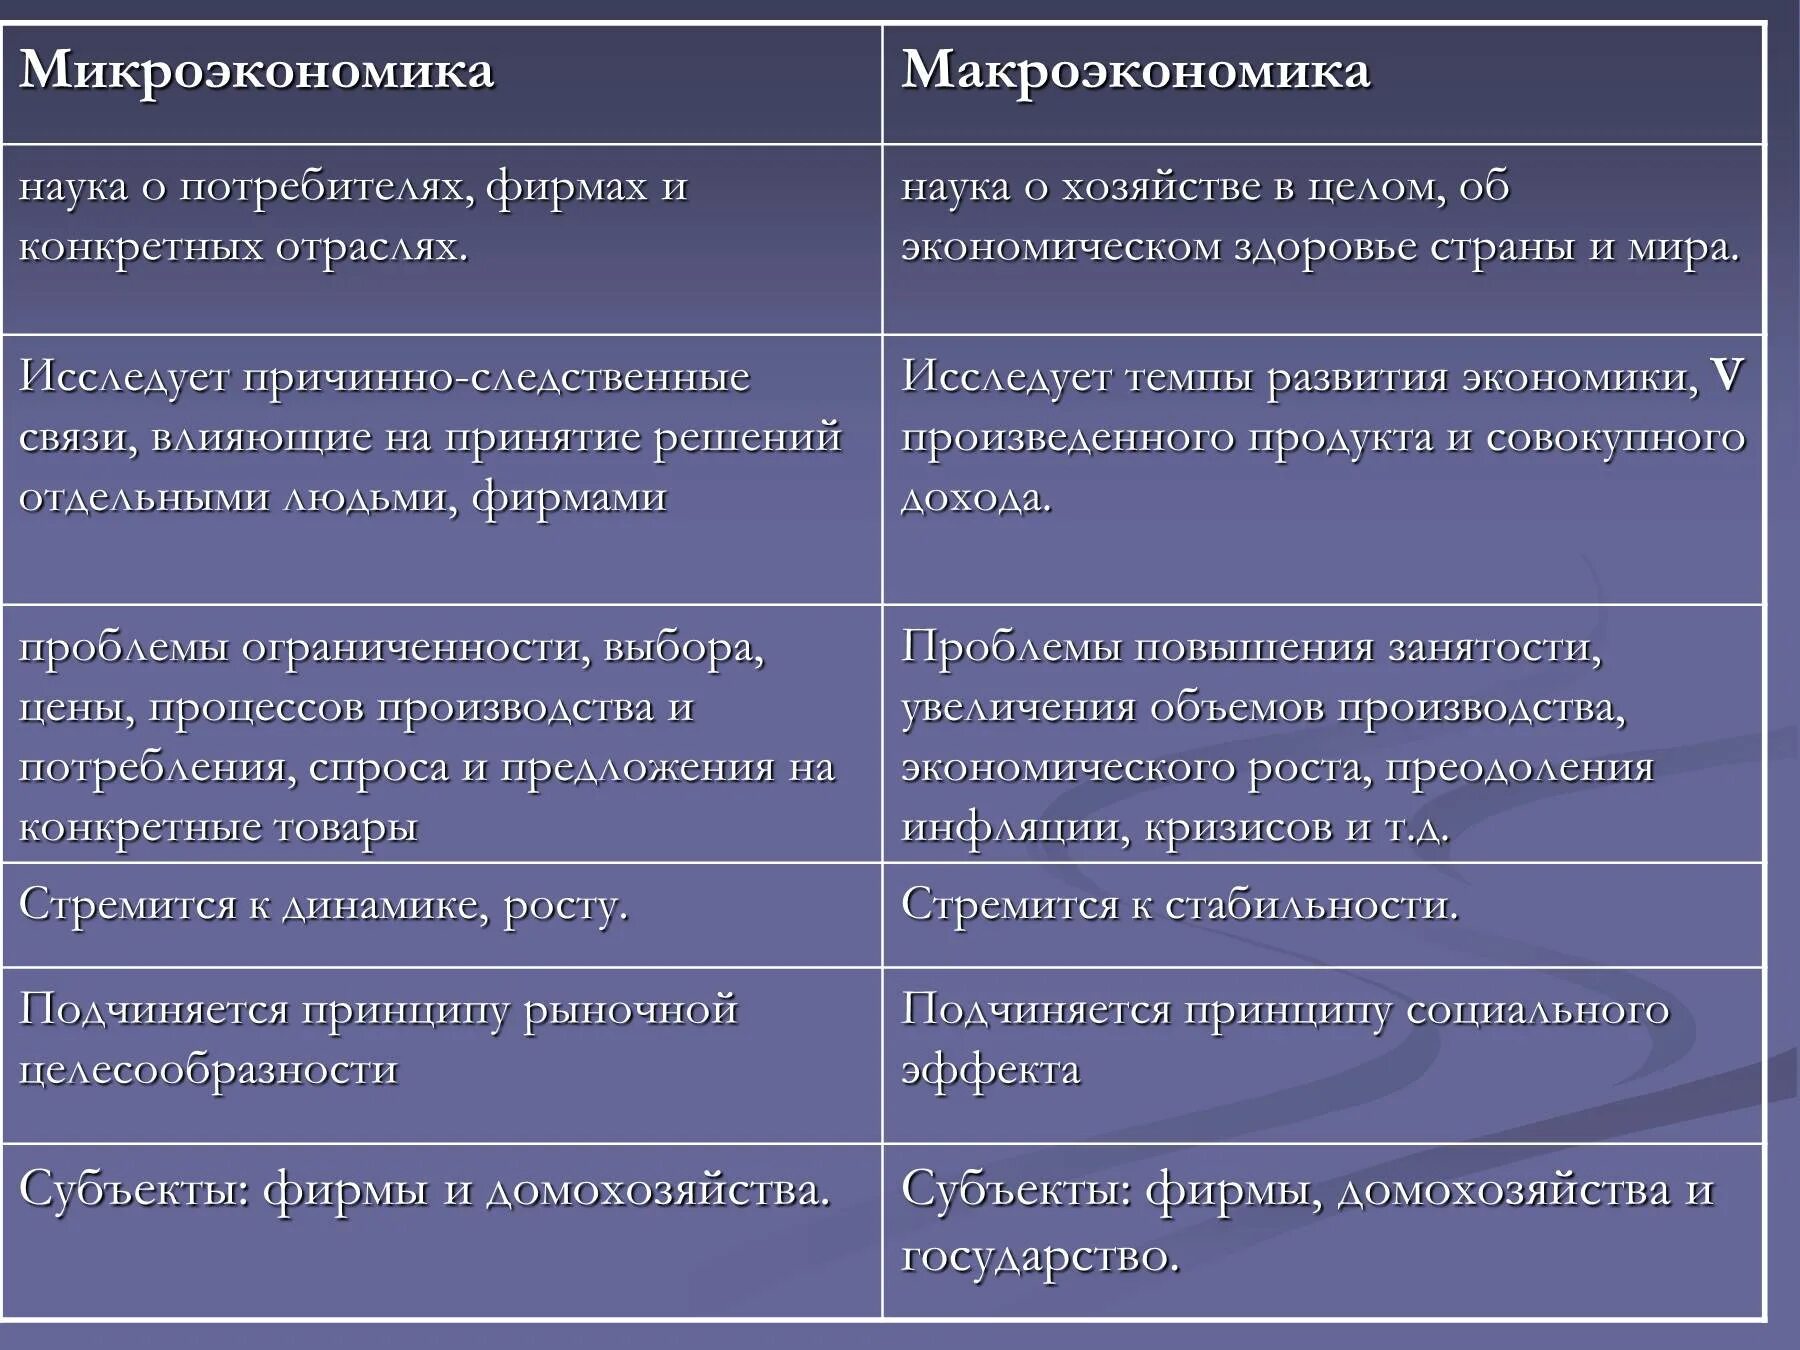 Сравнительная характеристика макроэкономики и микроэкономики. Признаки микроэкономики. Макроэкономика и Микроэкономика различия. Макроэкономика и Микроэкономика таблица.